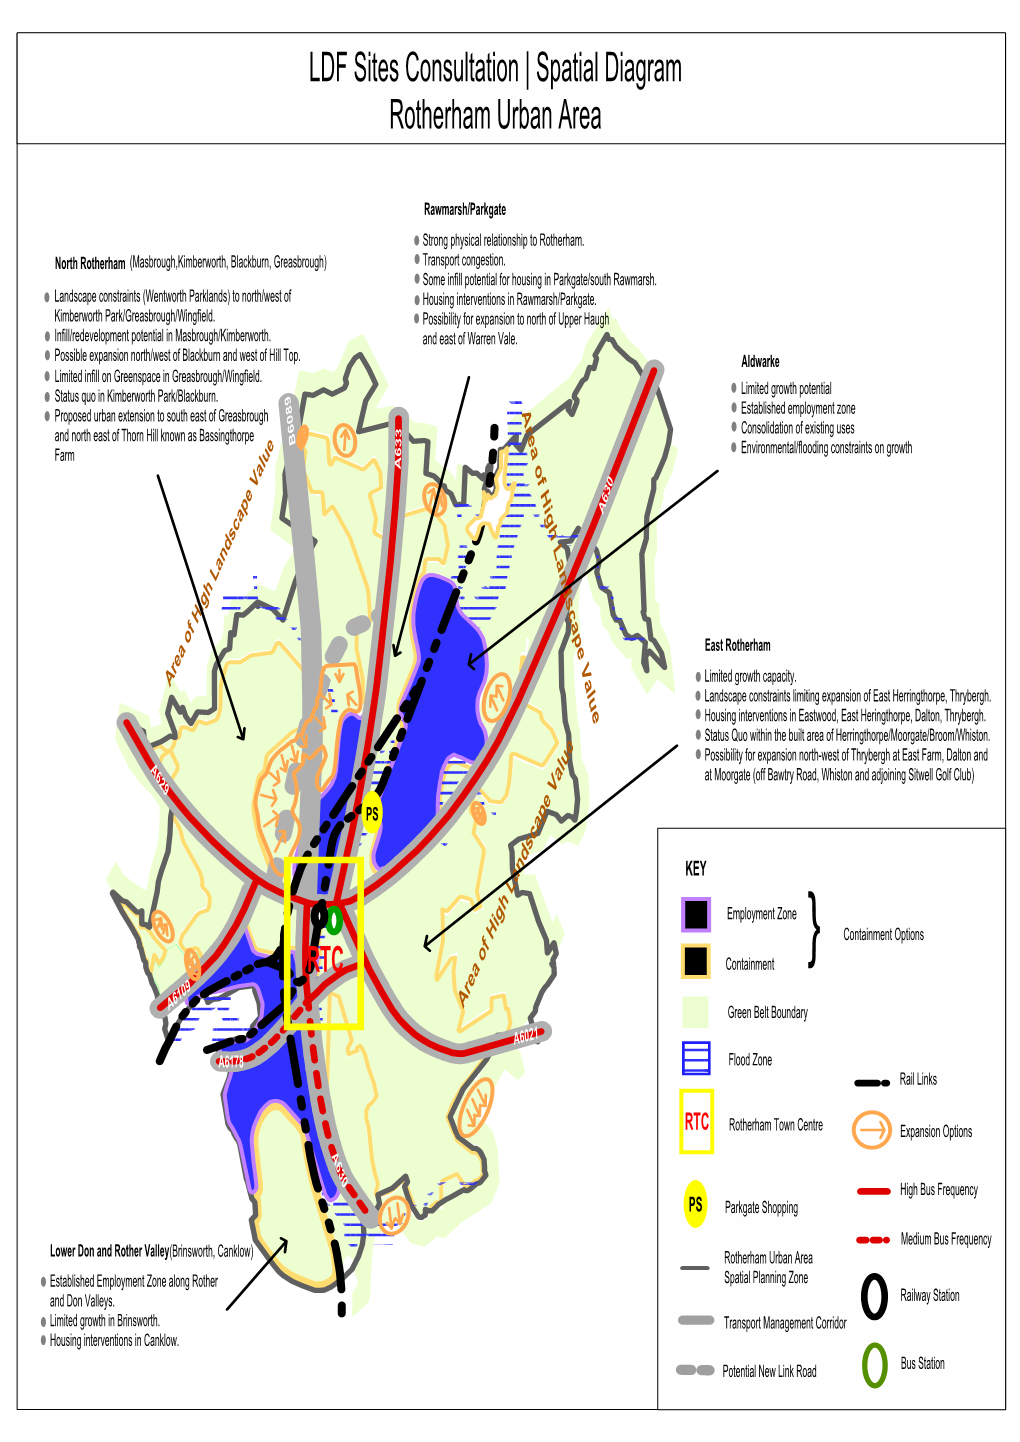 LDF Sites Consultation | Spatial Diagram Rotherham Urban Area